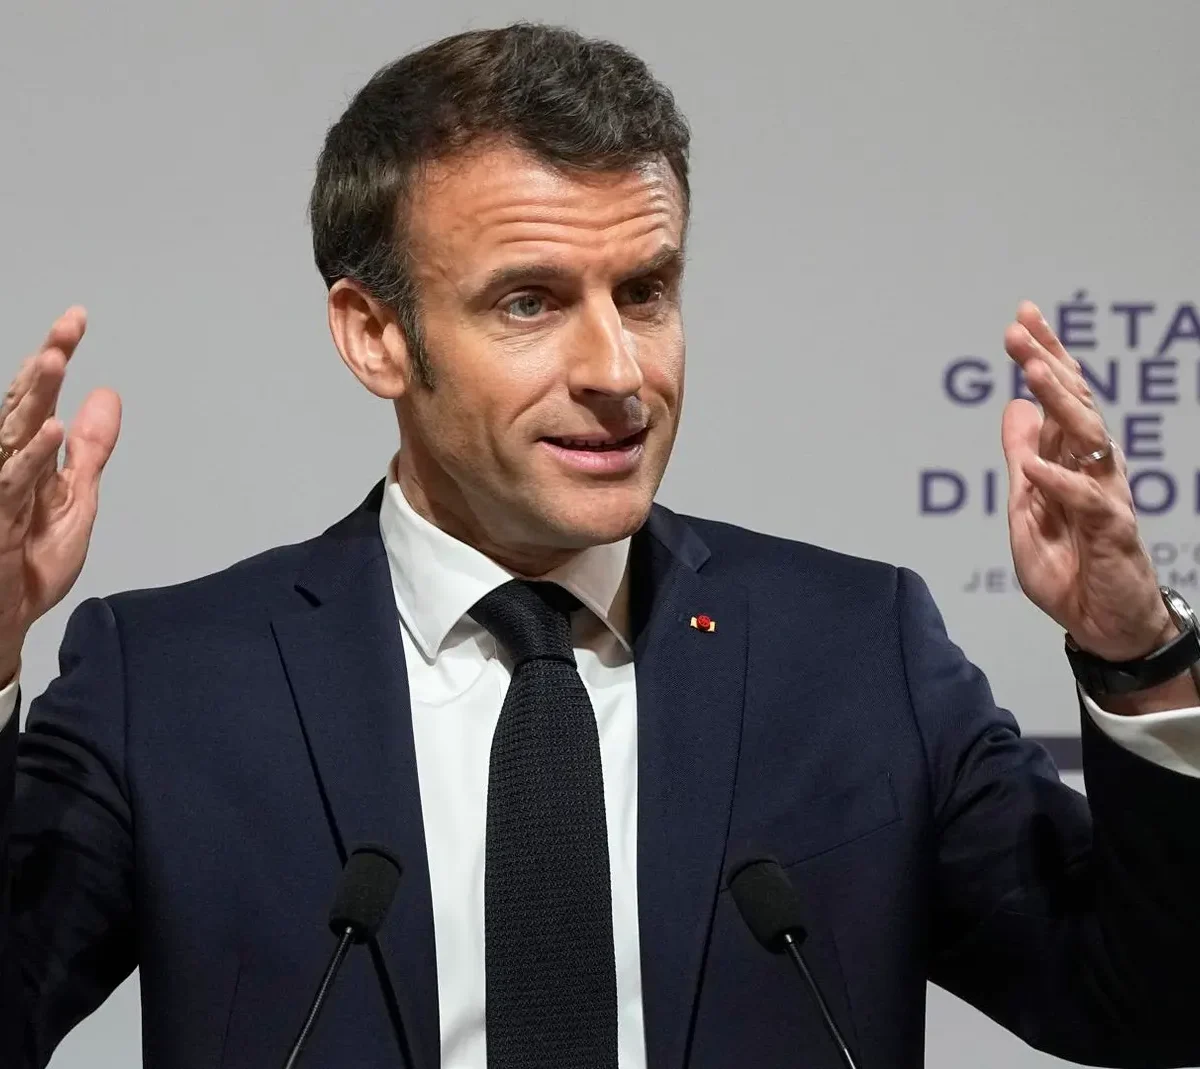 Macron dice que la reforma era “necesaria” y propone un nuevo pacto social